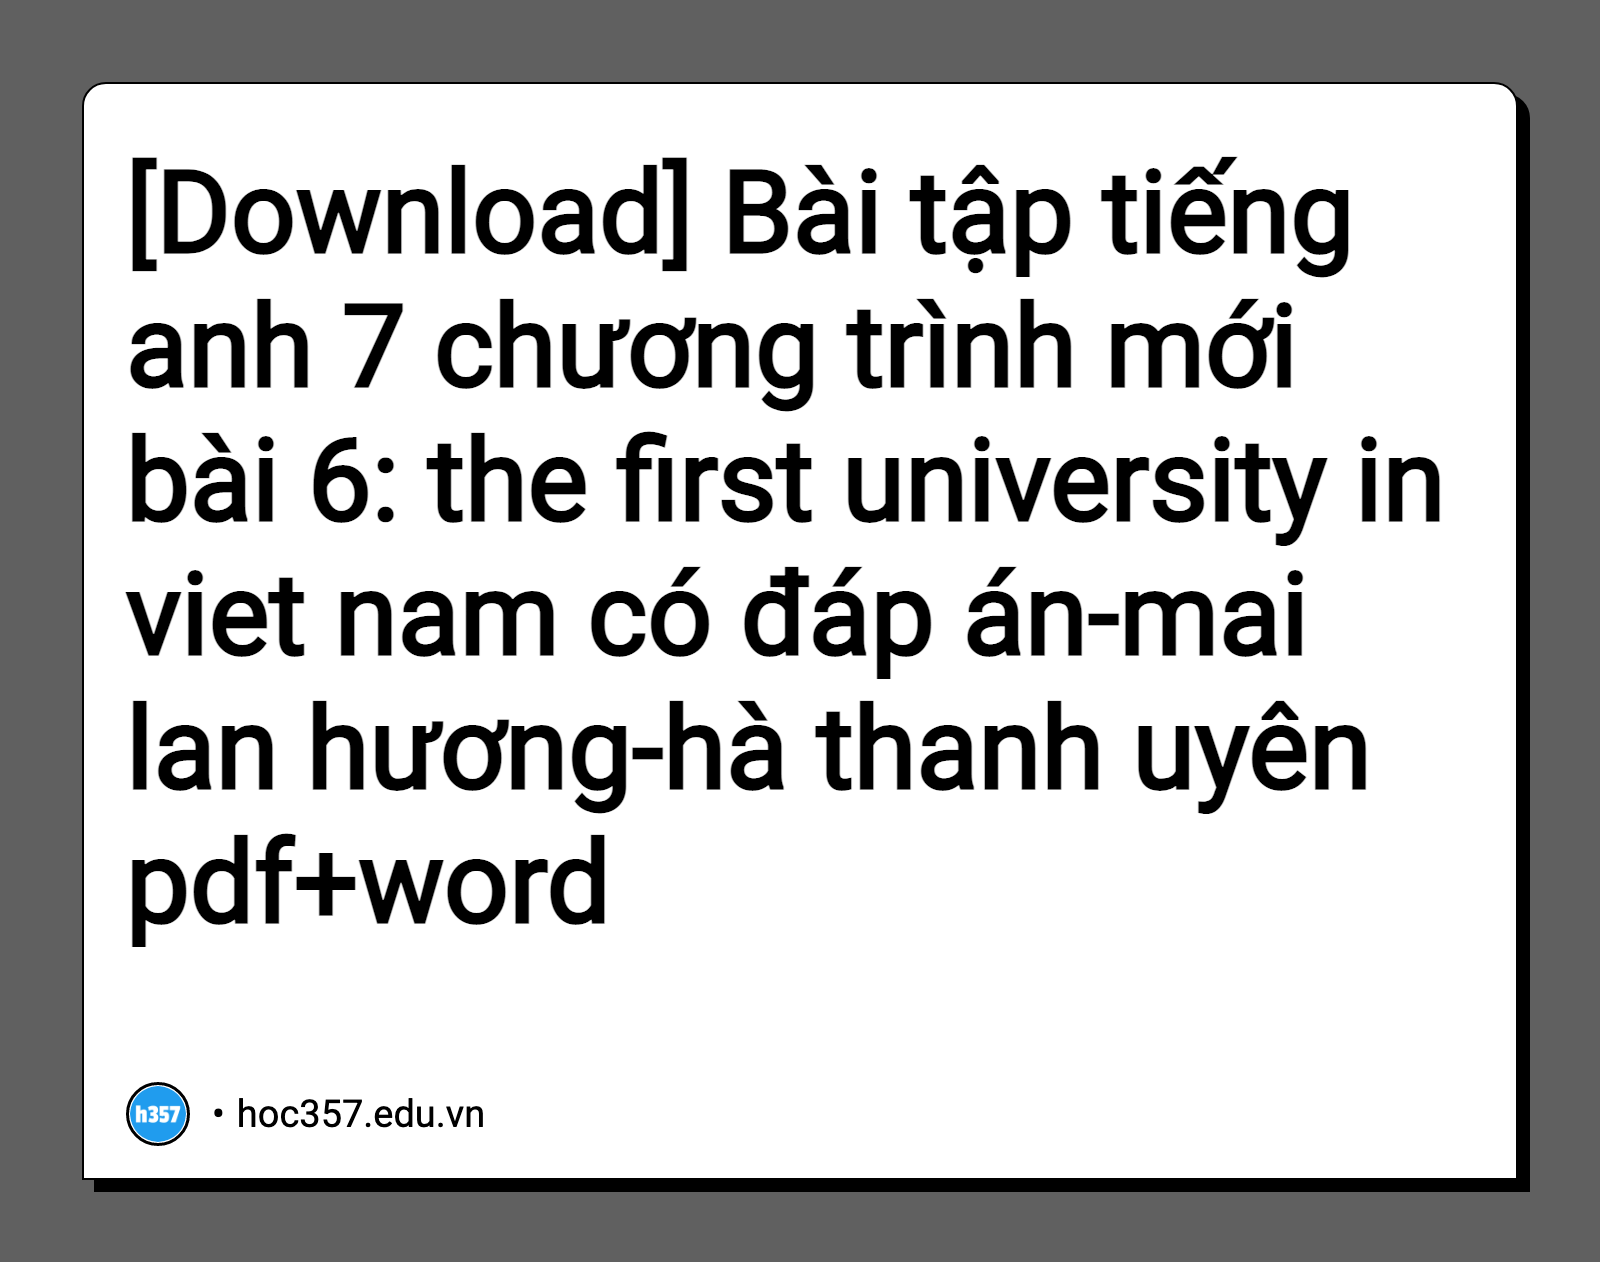 Hình minh họa Bài tập tiếng anh 7 chương trình mới bài 6: the first university in viet nam có đáp án-mai lan hương-hà thanh uyên